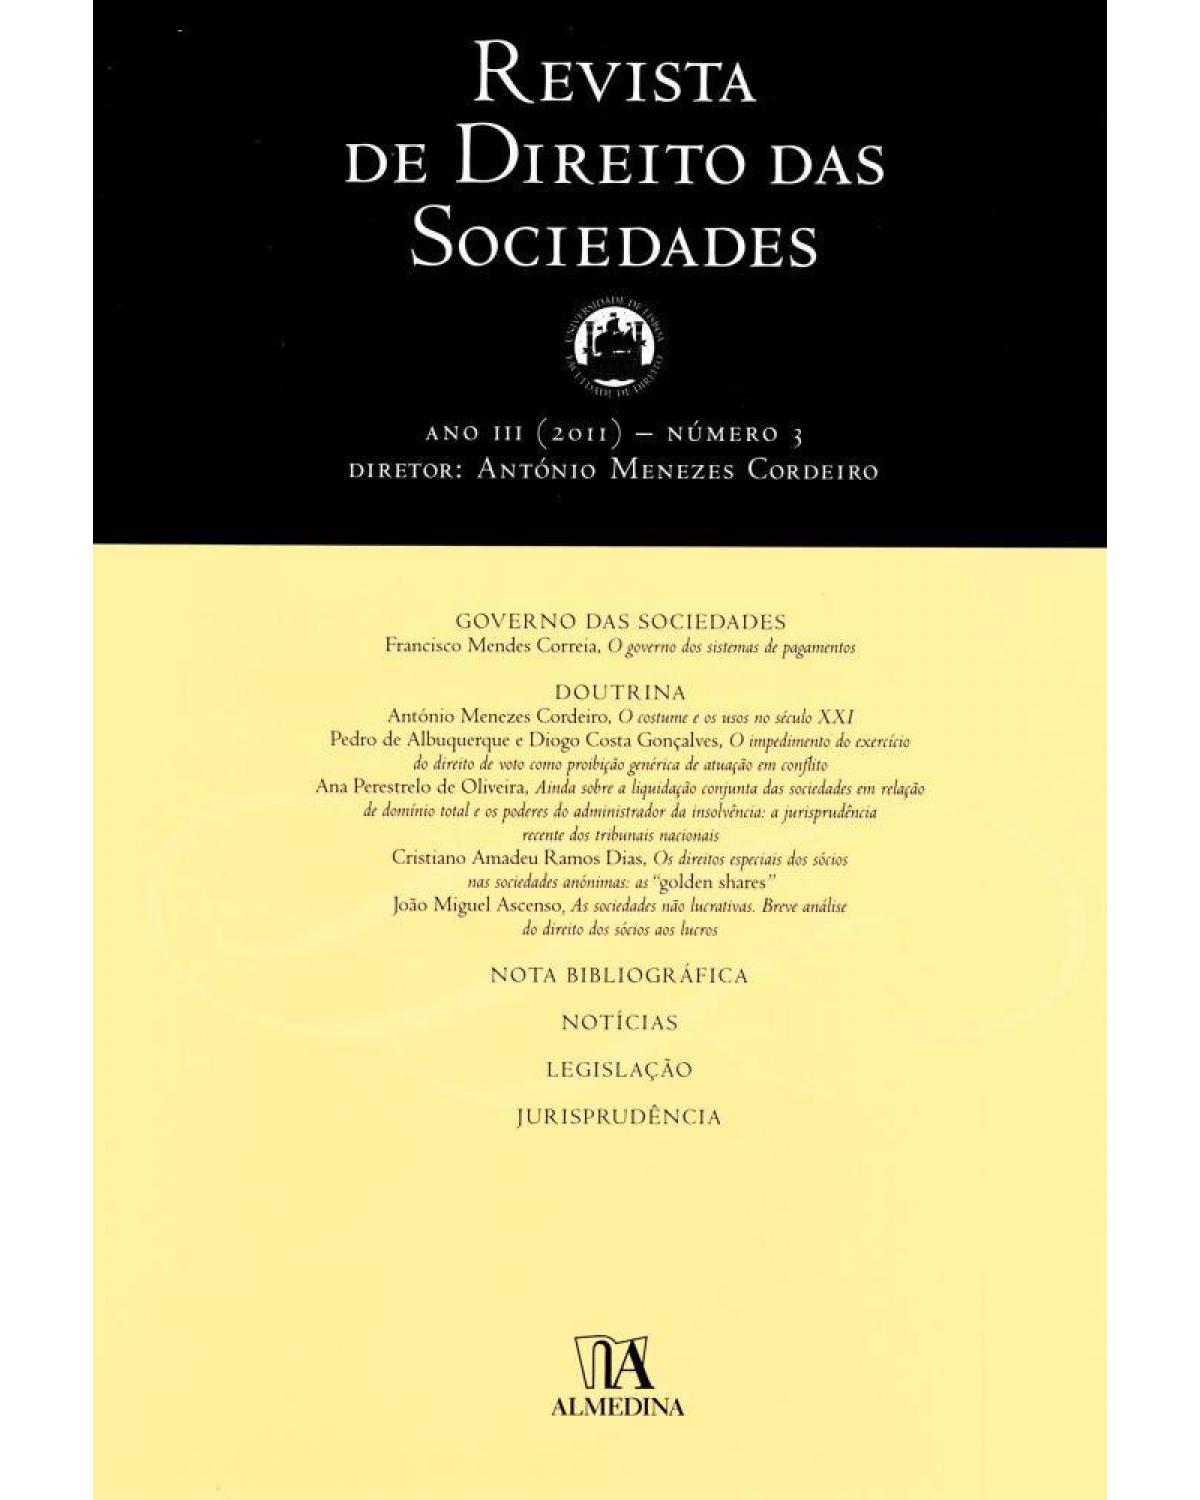 Revista de direito das sociedades - ano III - Nº 3 - 1ª Edição | 2012